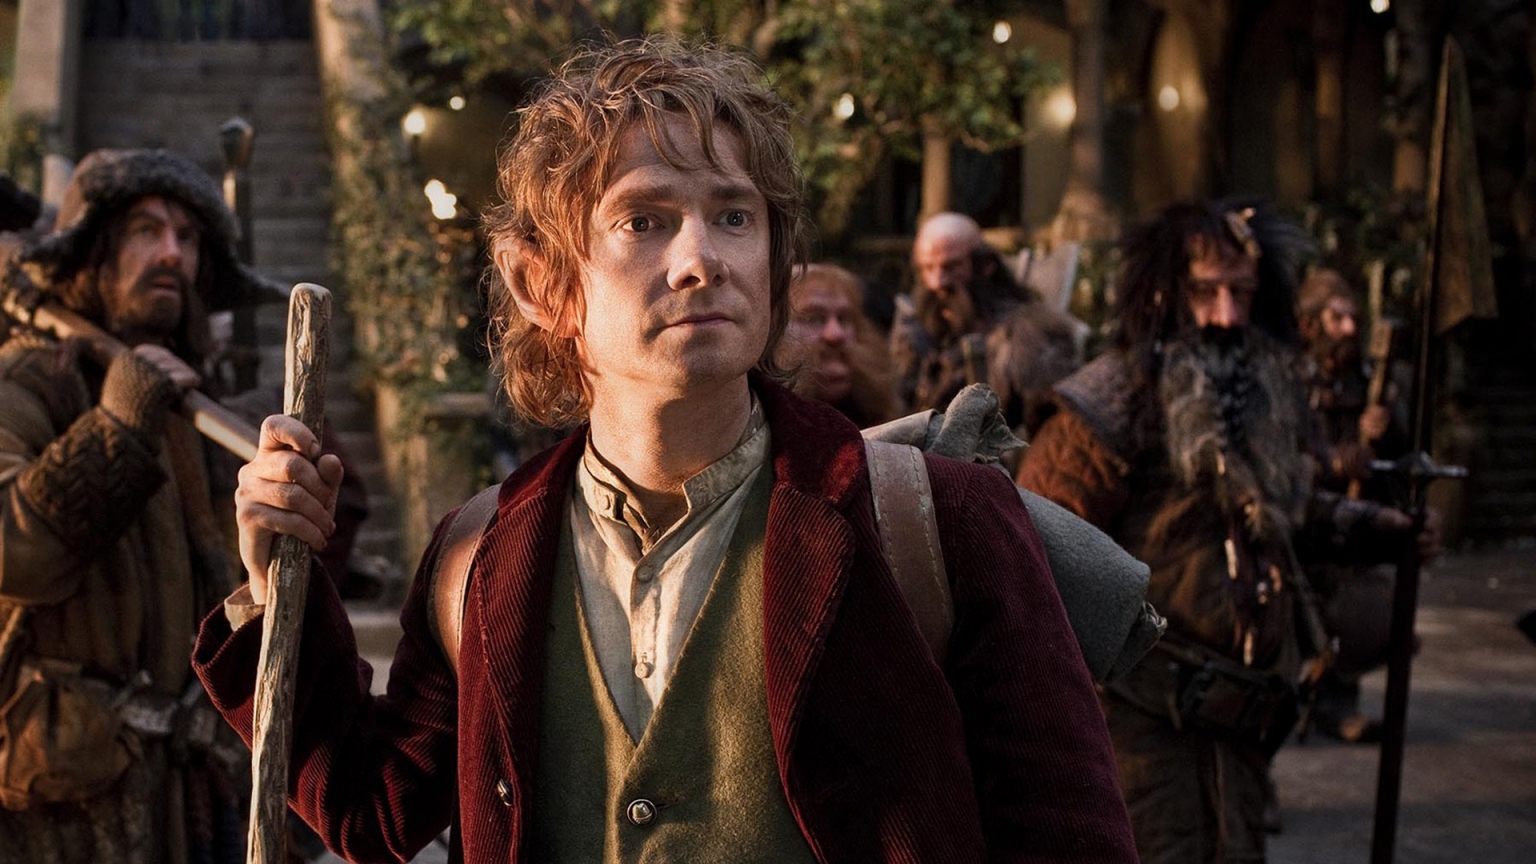 Bilbo Baggins from The Hobbit for 1536 x 864 HDTV resolution